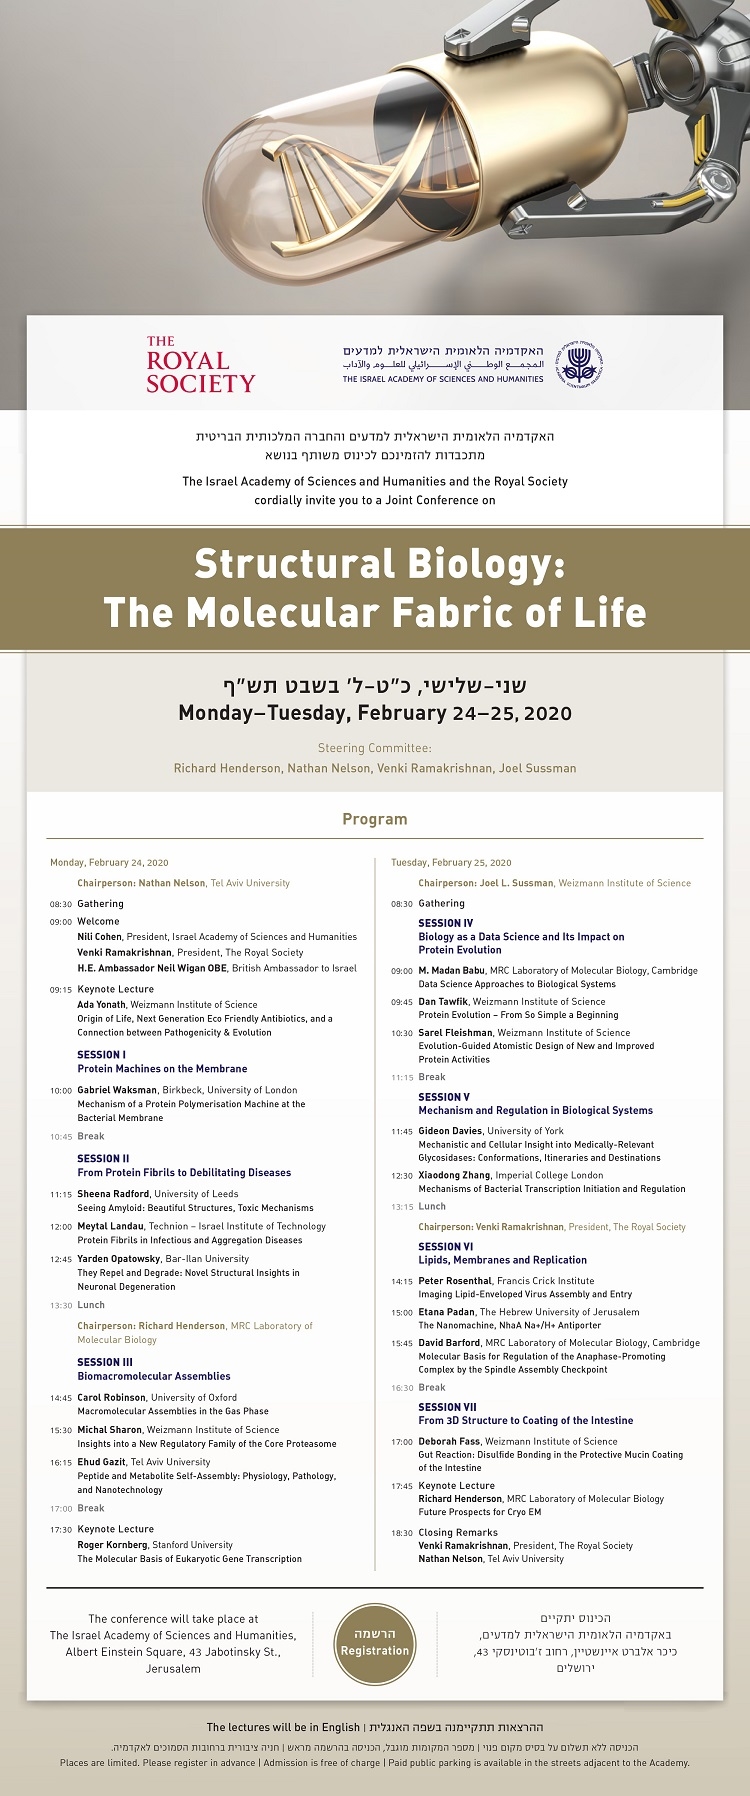 כינוס דו-לאומי בנושא Structural Biology: The Molecular Fabric of Life